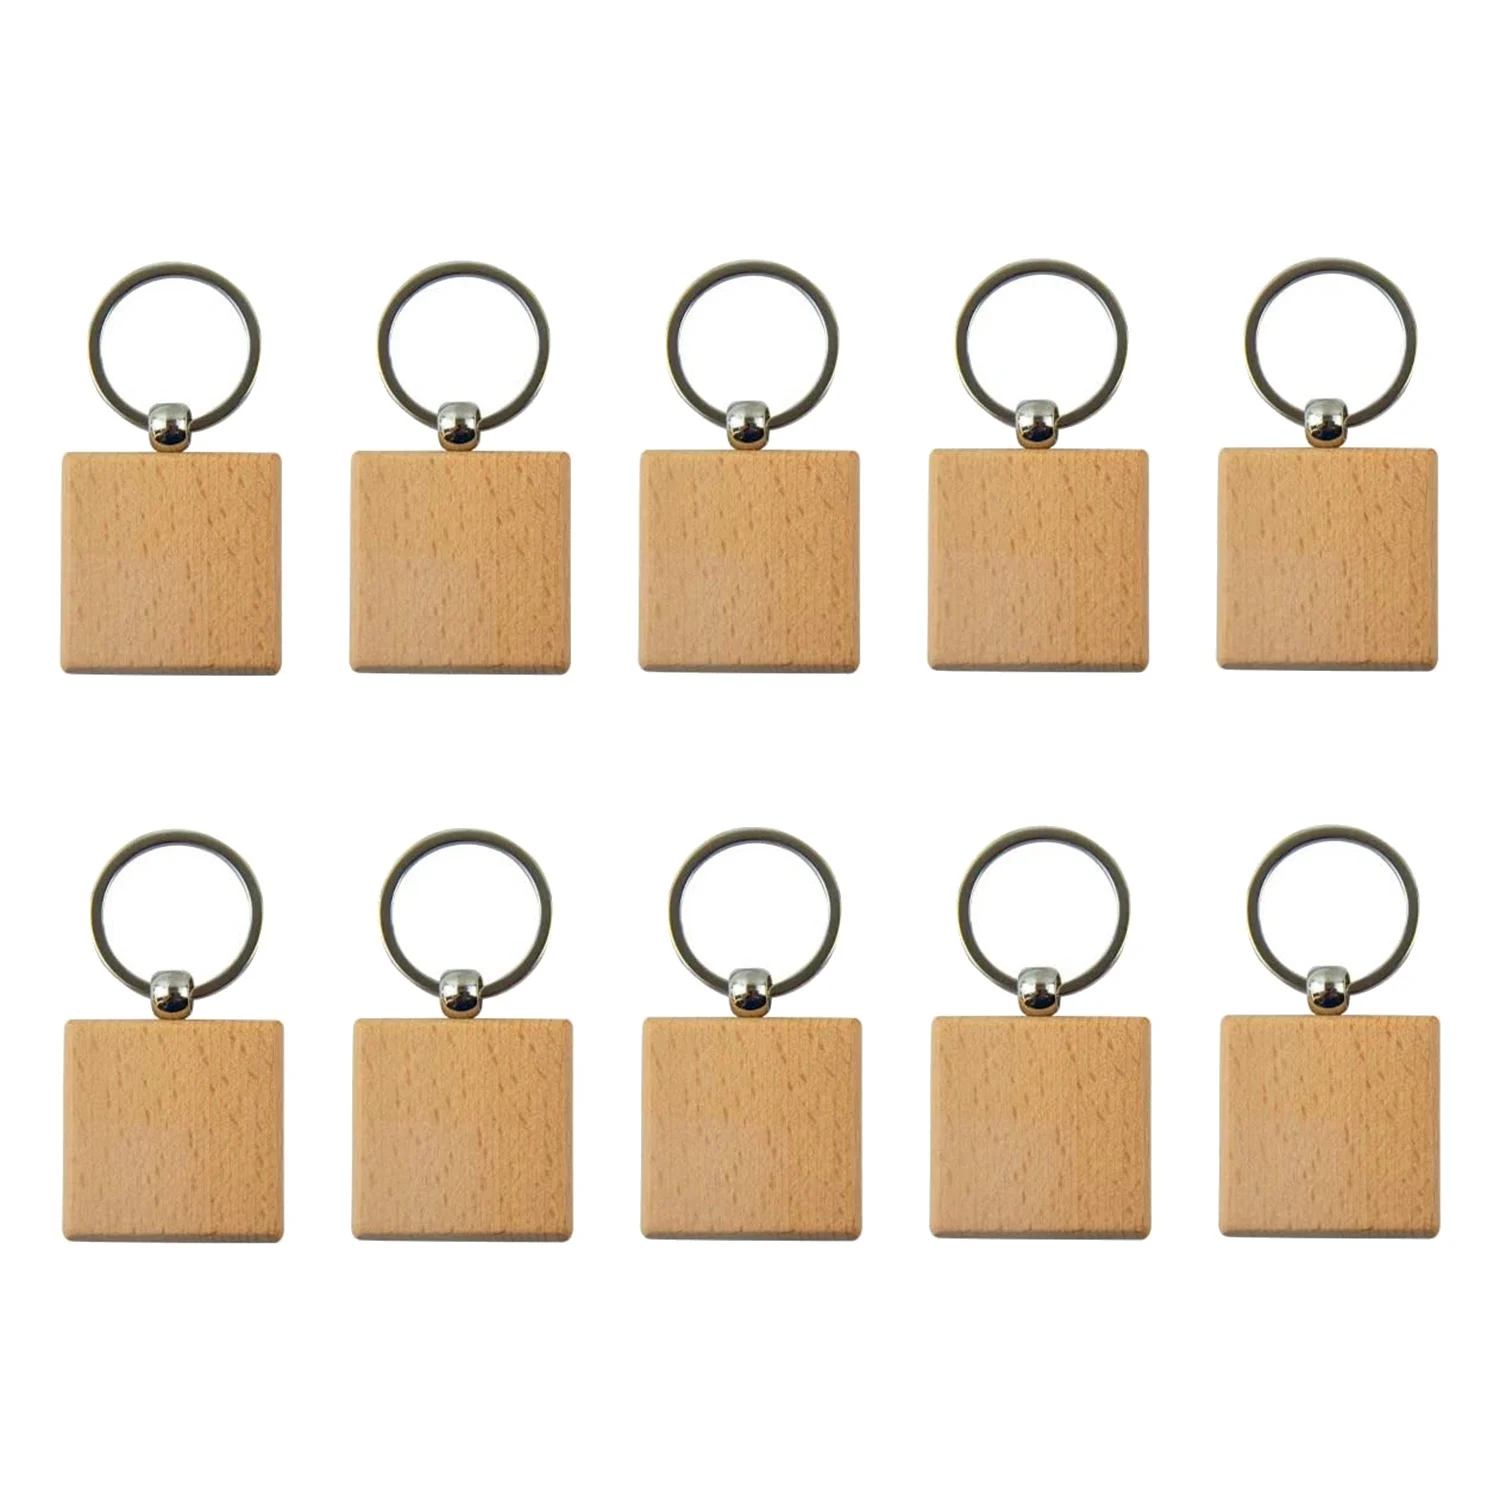 

Пустой деревянный брелок для ключей, деревянный брелок для ключей, персонализированный брелок для повседневного использования или лучший подарок (квадратный, 20 шт.)